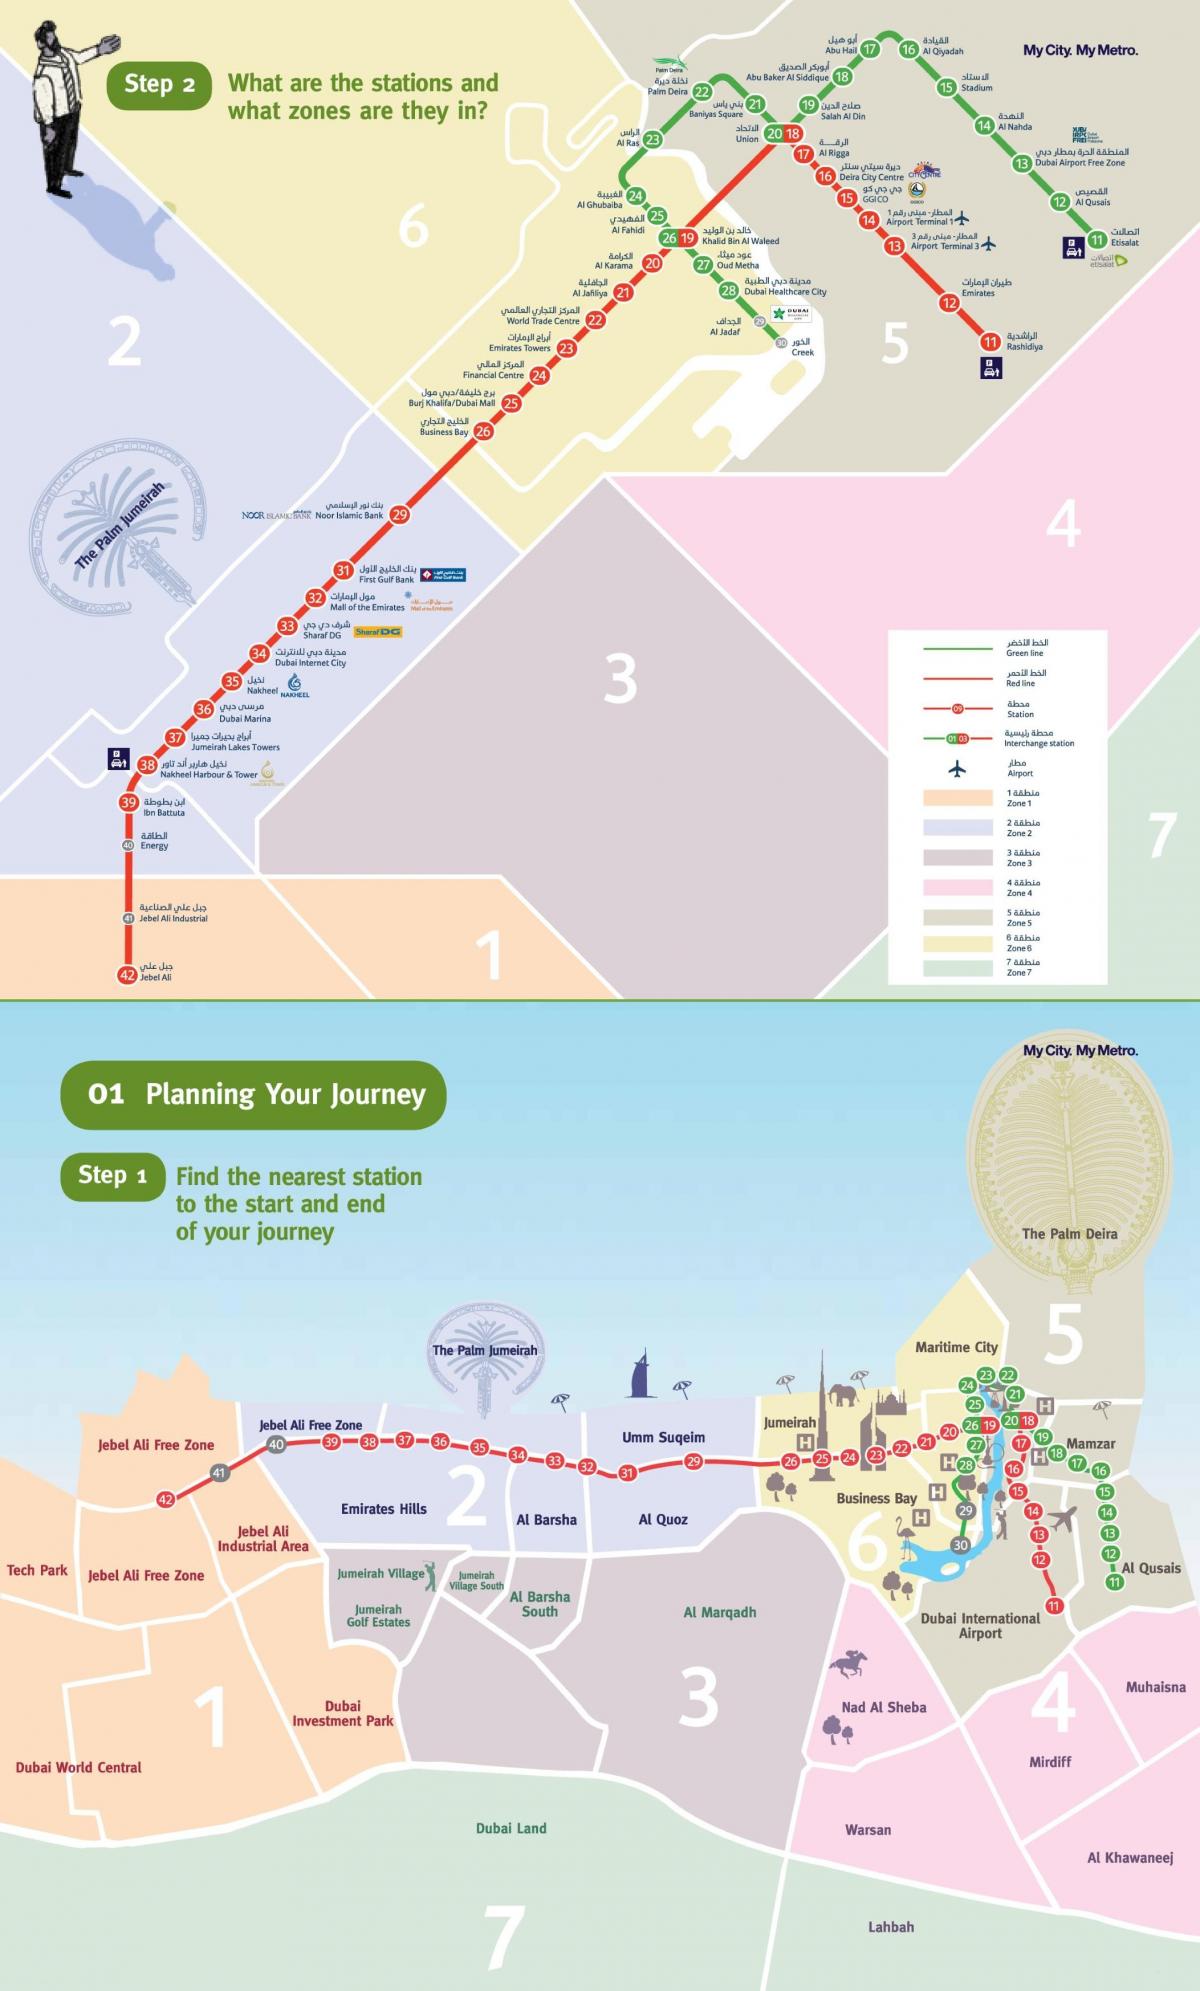 Дубаи ртс метро мапа